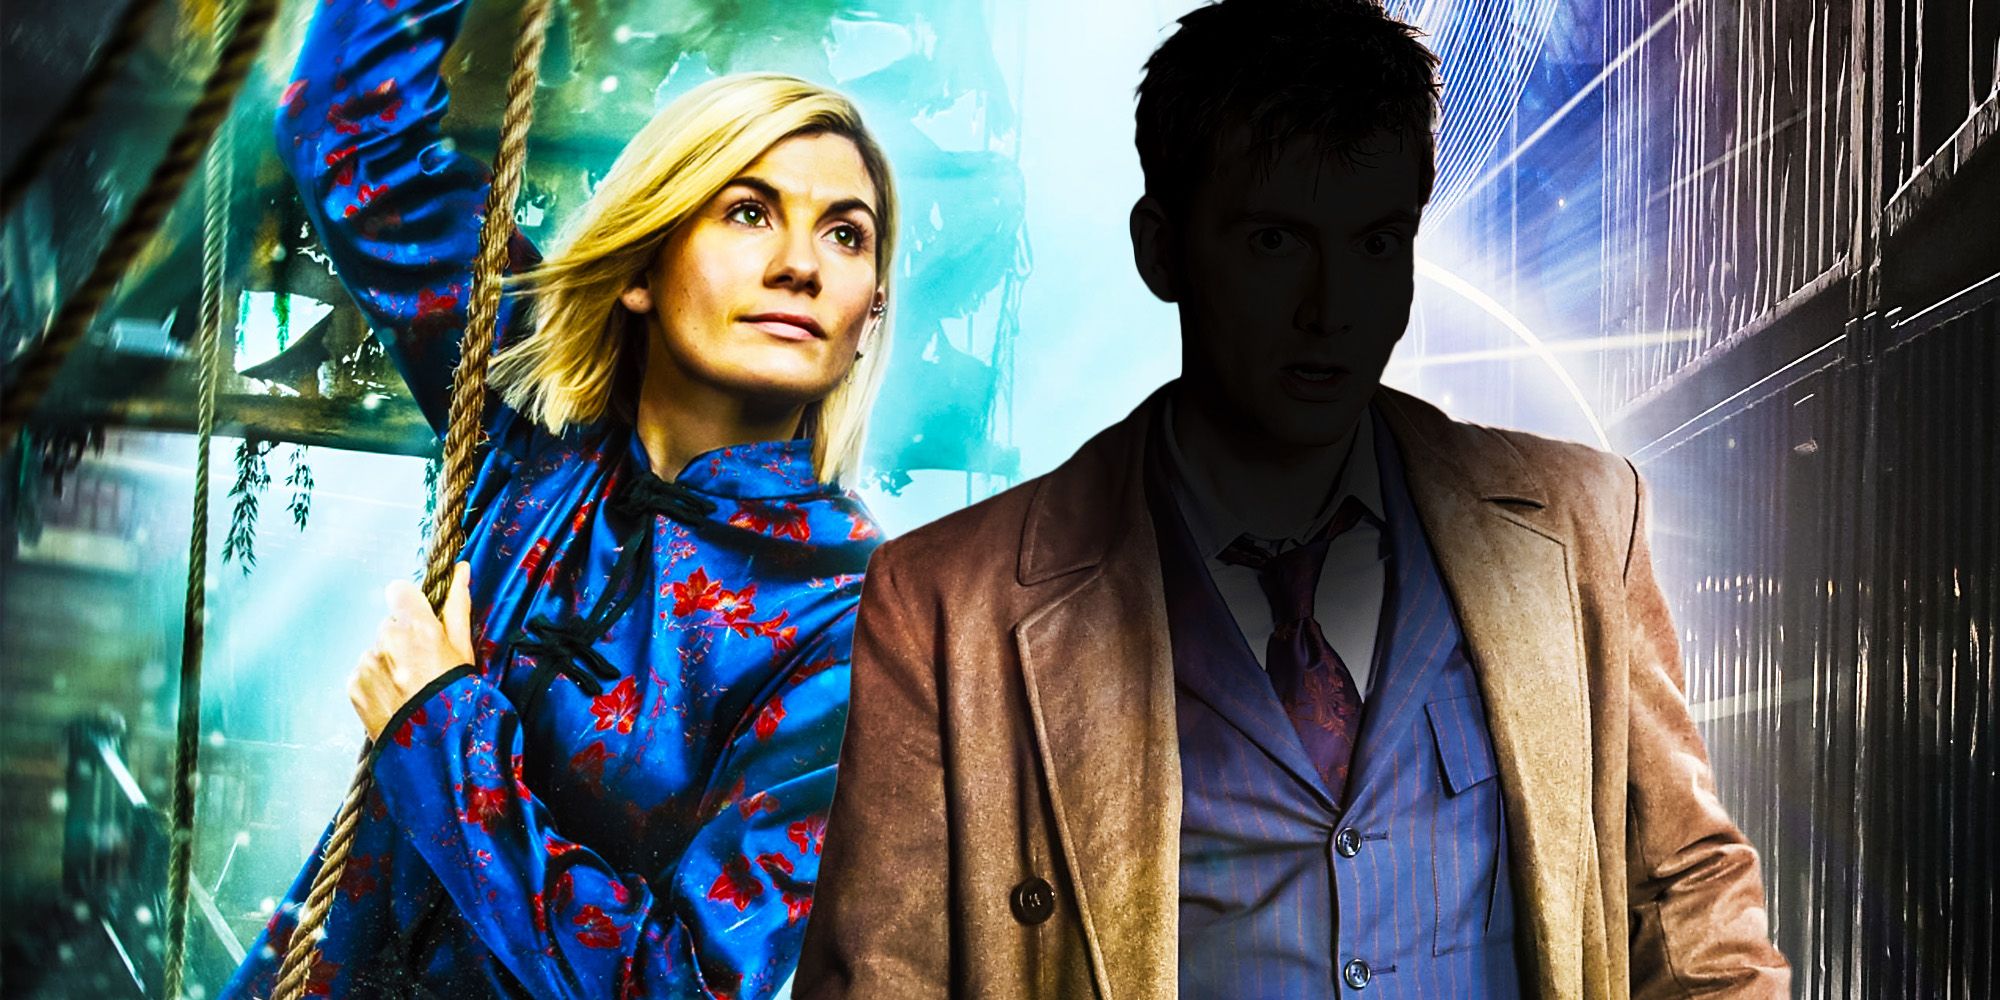 Doctor Who revelar al nuevo doctor ahora sería injusto para Jodie Whittaker